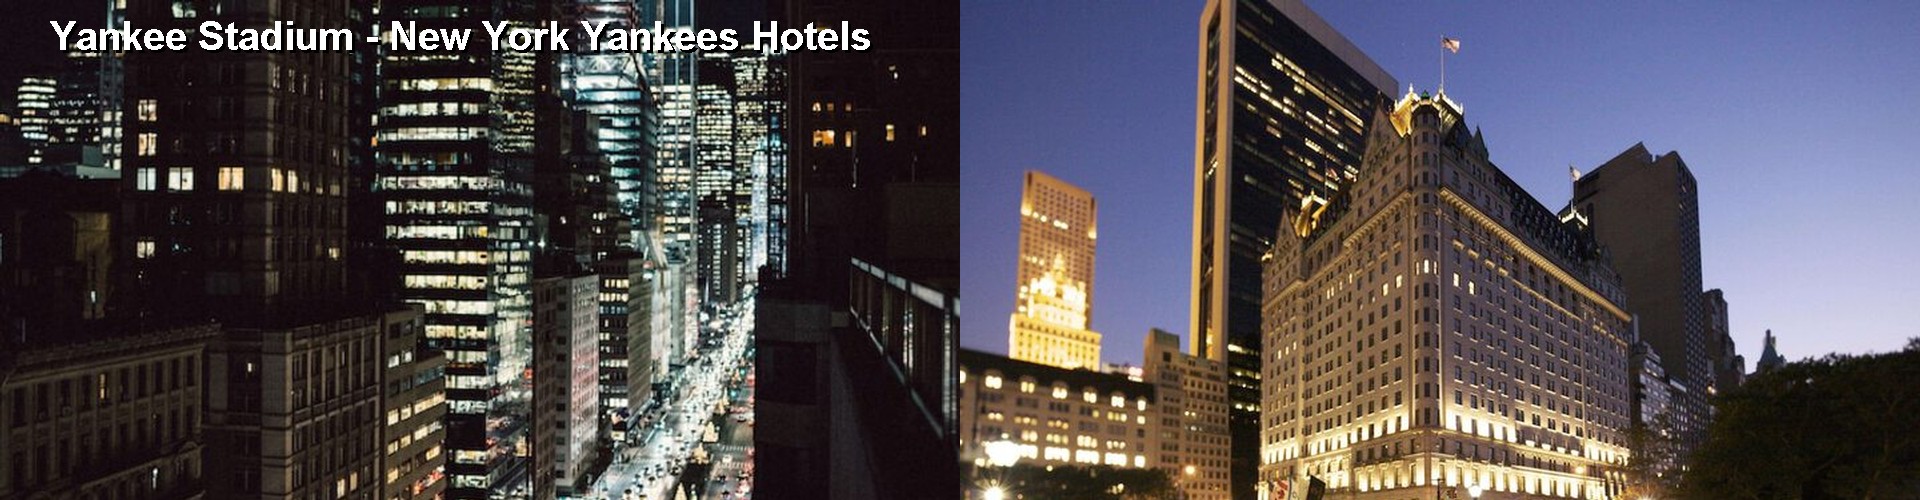 2 Best Hotels near Yankee Stadium - New York Yankees